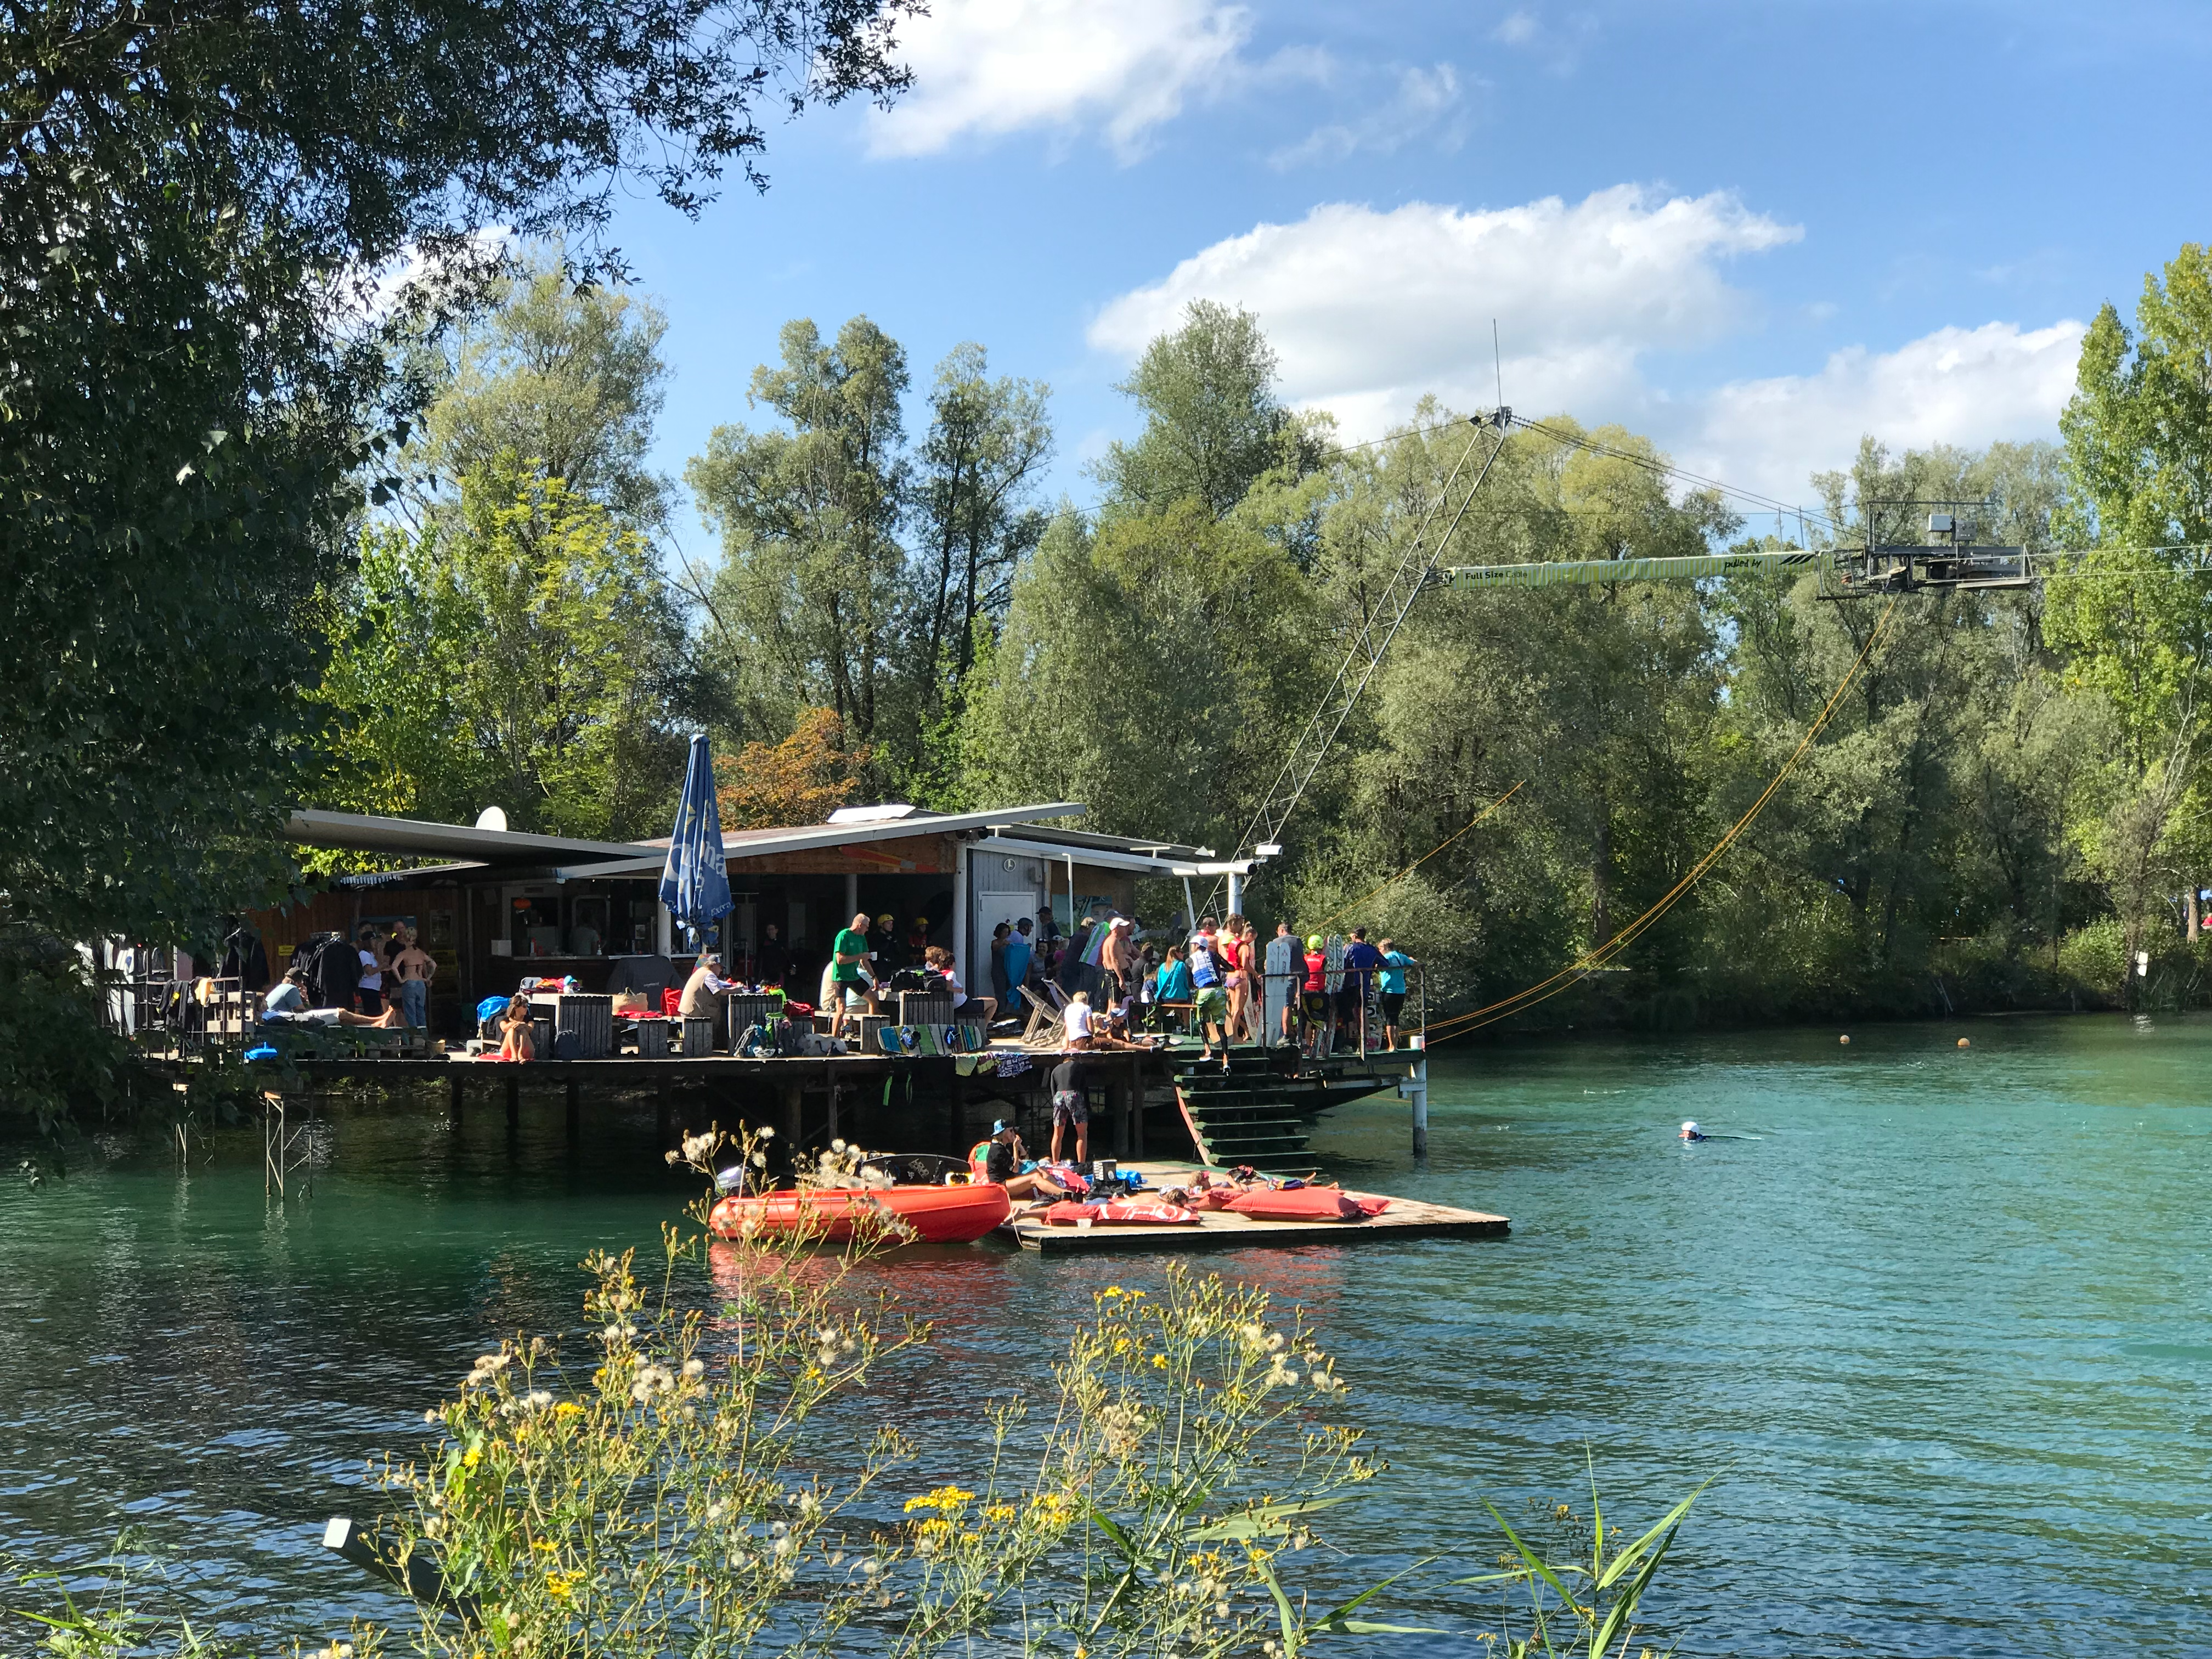 Eine der drei Wasserskianlagen am Inselsee Allgäu. Ein beliebtes Ausflugsziel für Wasserski und Wakeboardfahrer aber auch für Besucher im Café.